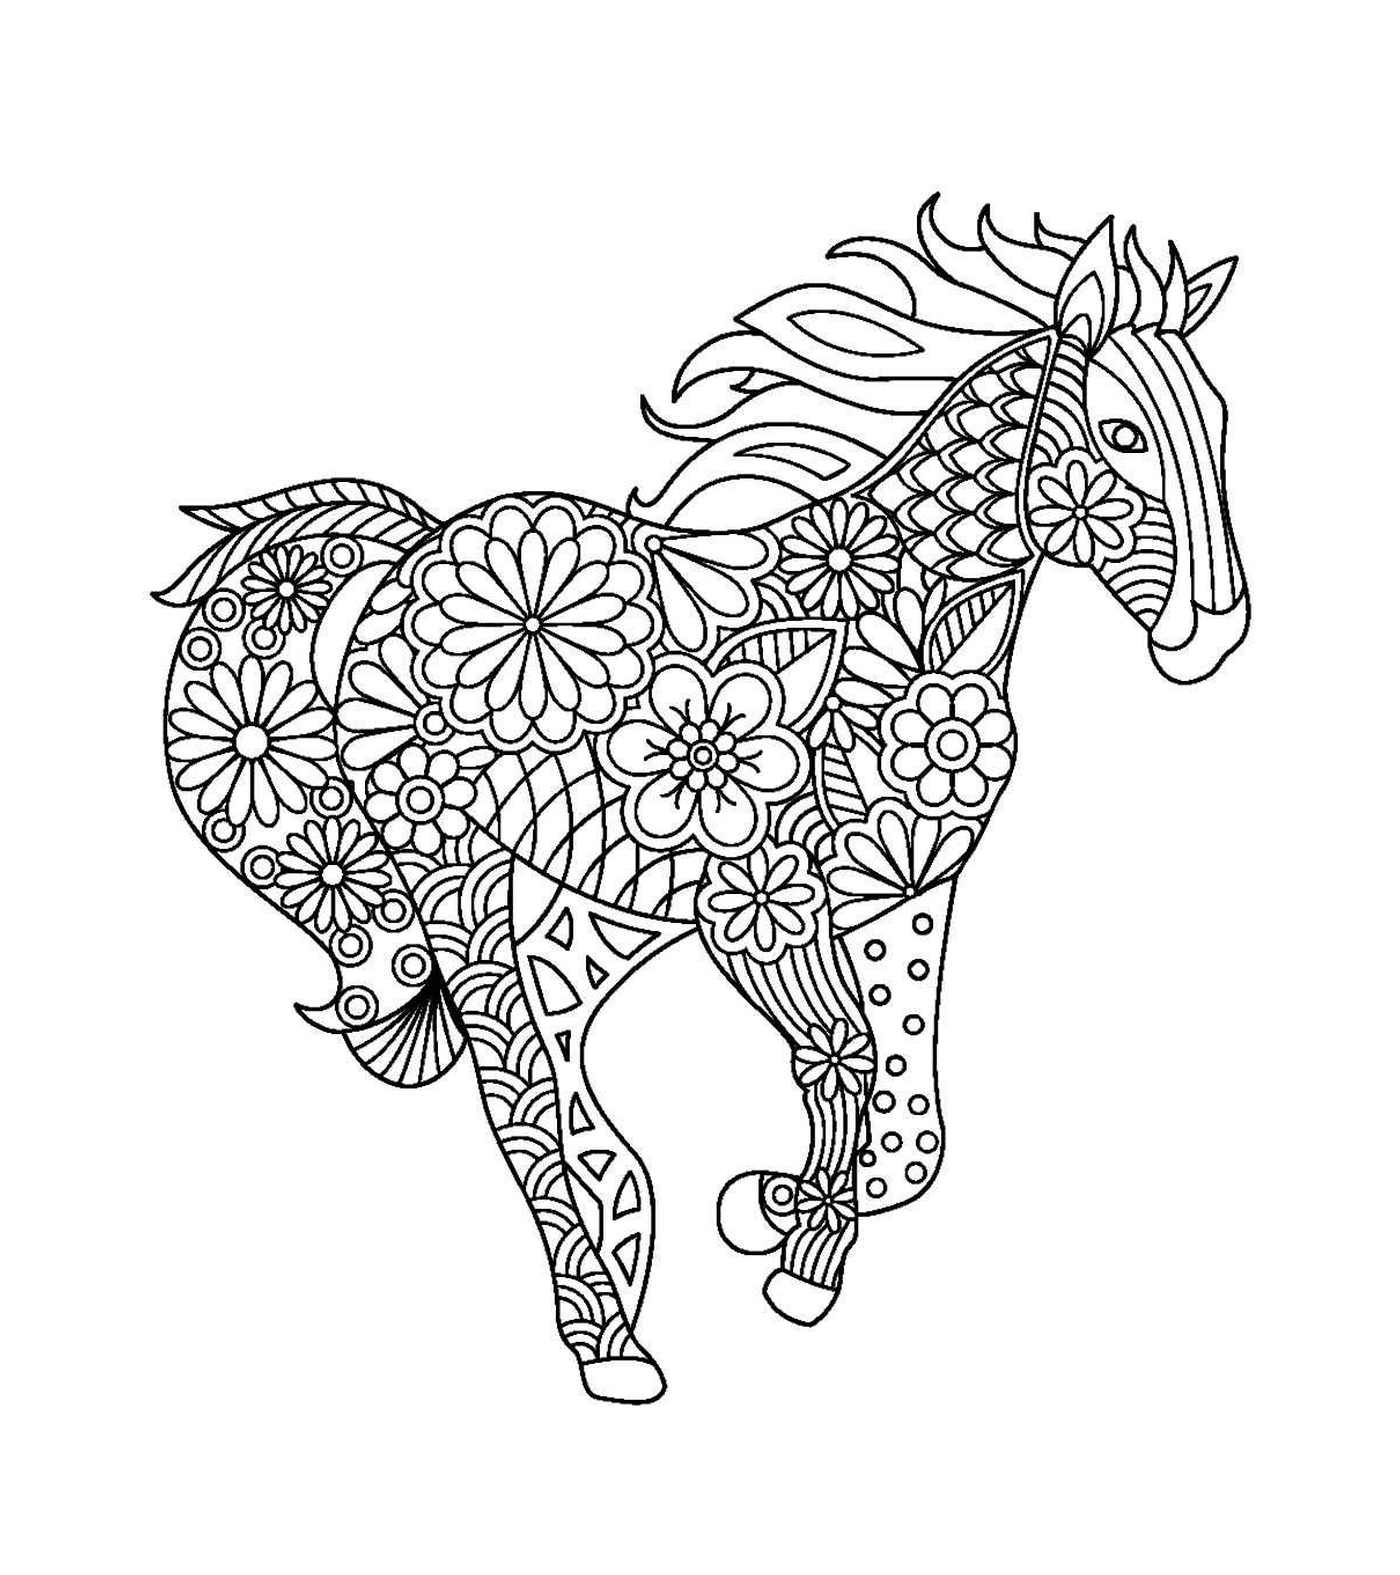   Un adulte d'un cheval avec des designs floraux 